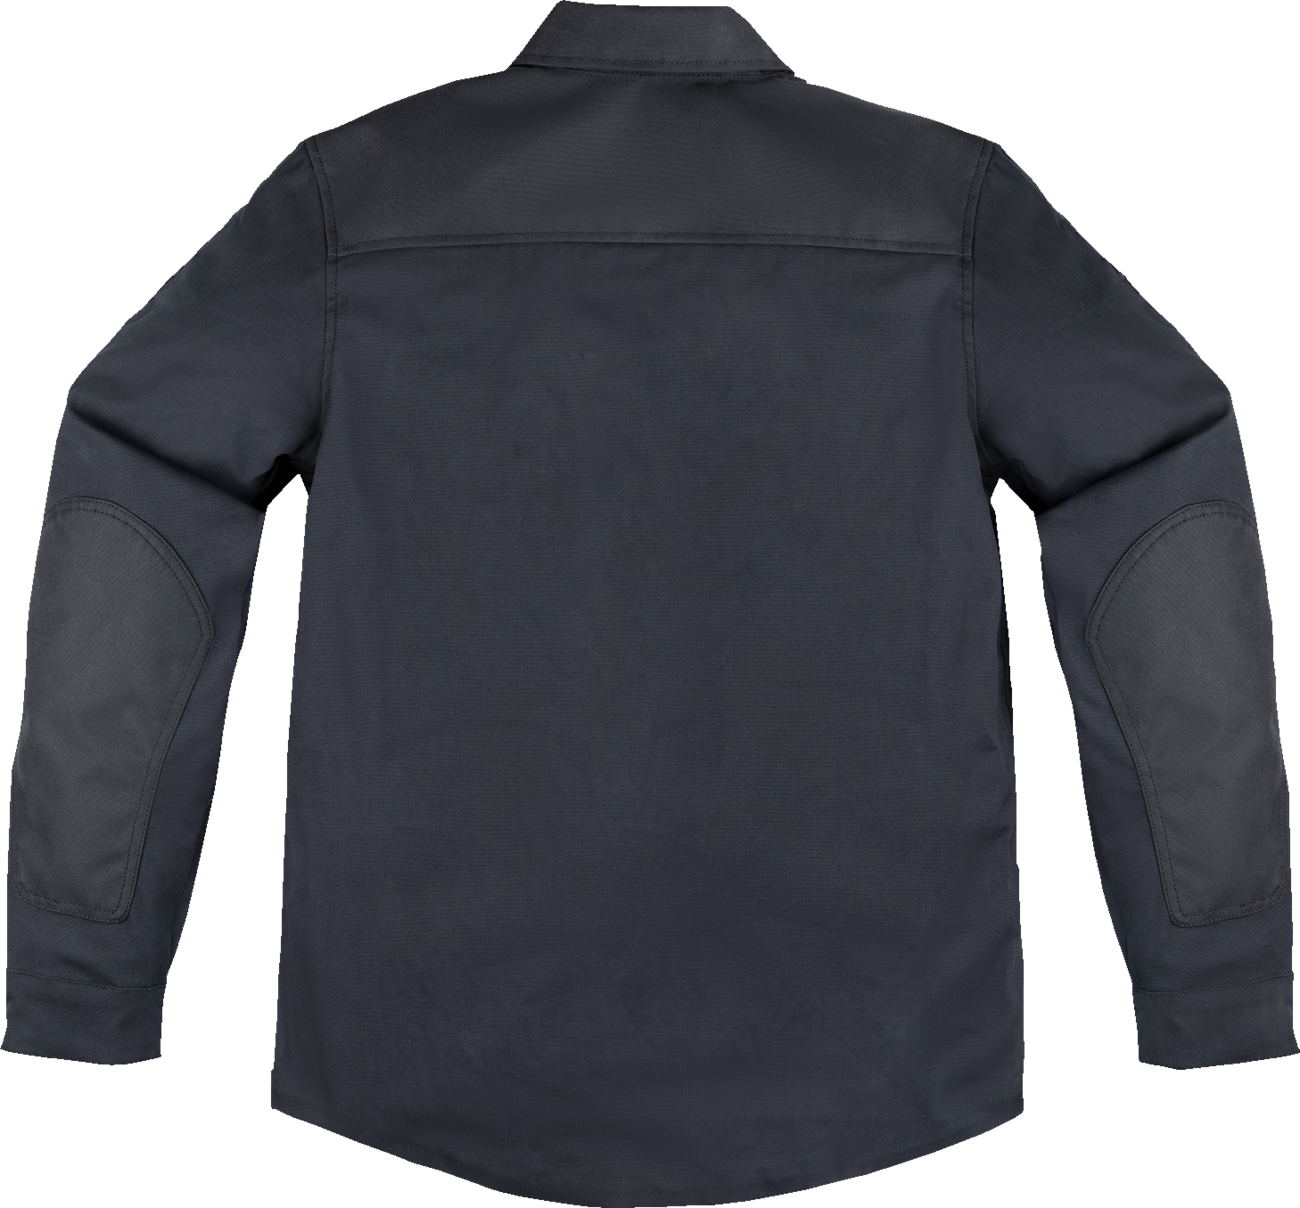 ICON Upstate Canvas National Jacket - Black - Medium 2820-6561